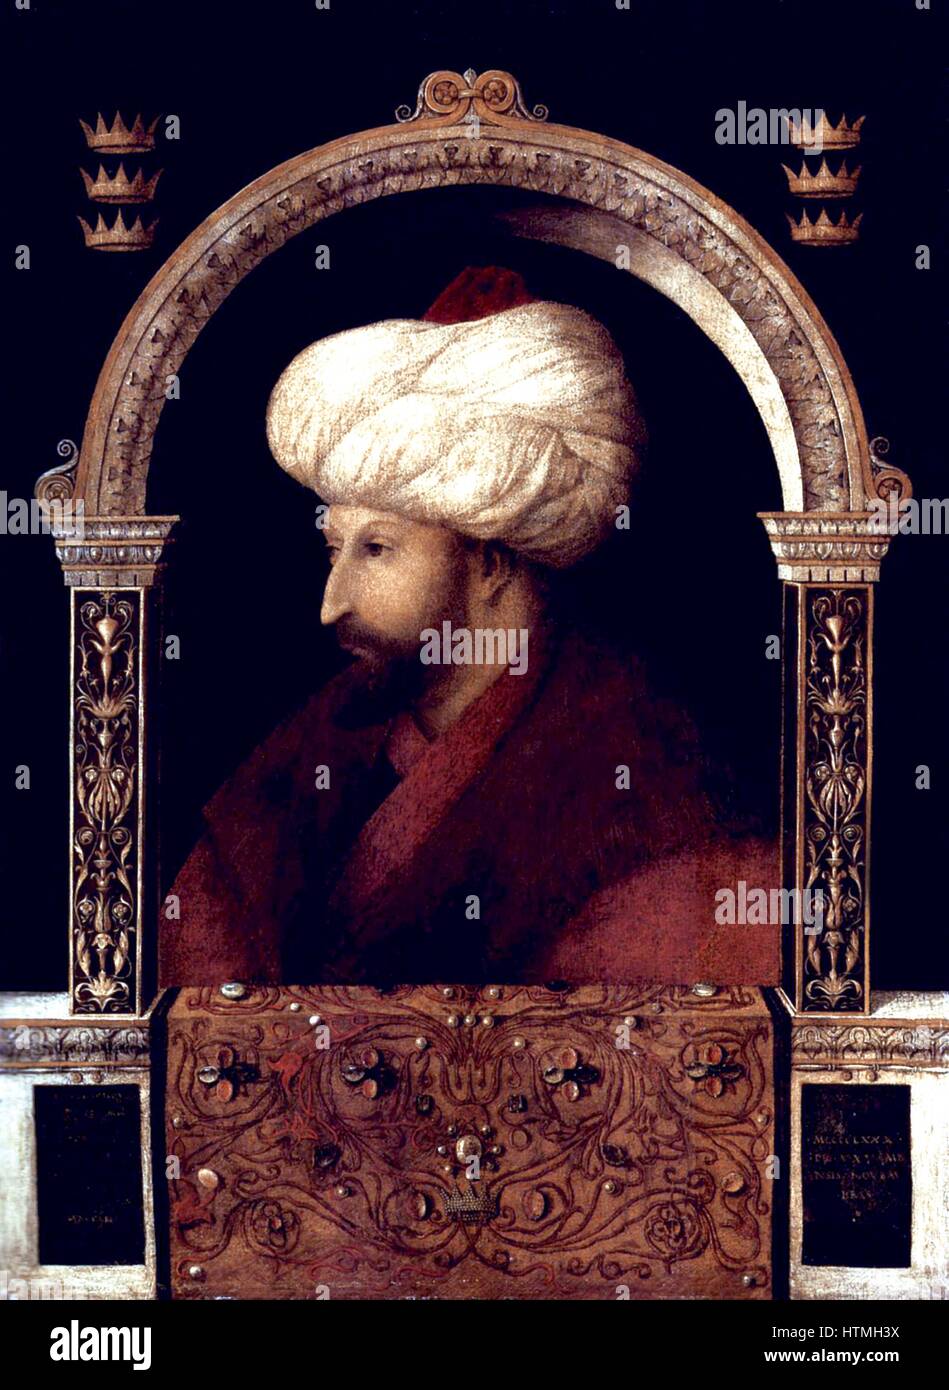 Suleiman I, (1494 - 1566) lungo-sultano regnante dell'Impero Ottomano, dal 1520 fino alla sua morte in 1566.Solimano il Magnifico marciando con esercito in Nakhichevan, estate 1554. Data 1561(1561) dipinto nel 1480 dipinto dal pittore veneziano Gentile Bellini (1429 - 1507) Foto Stock